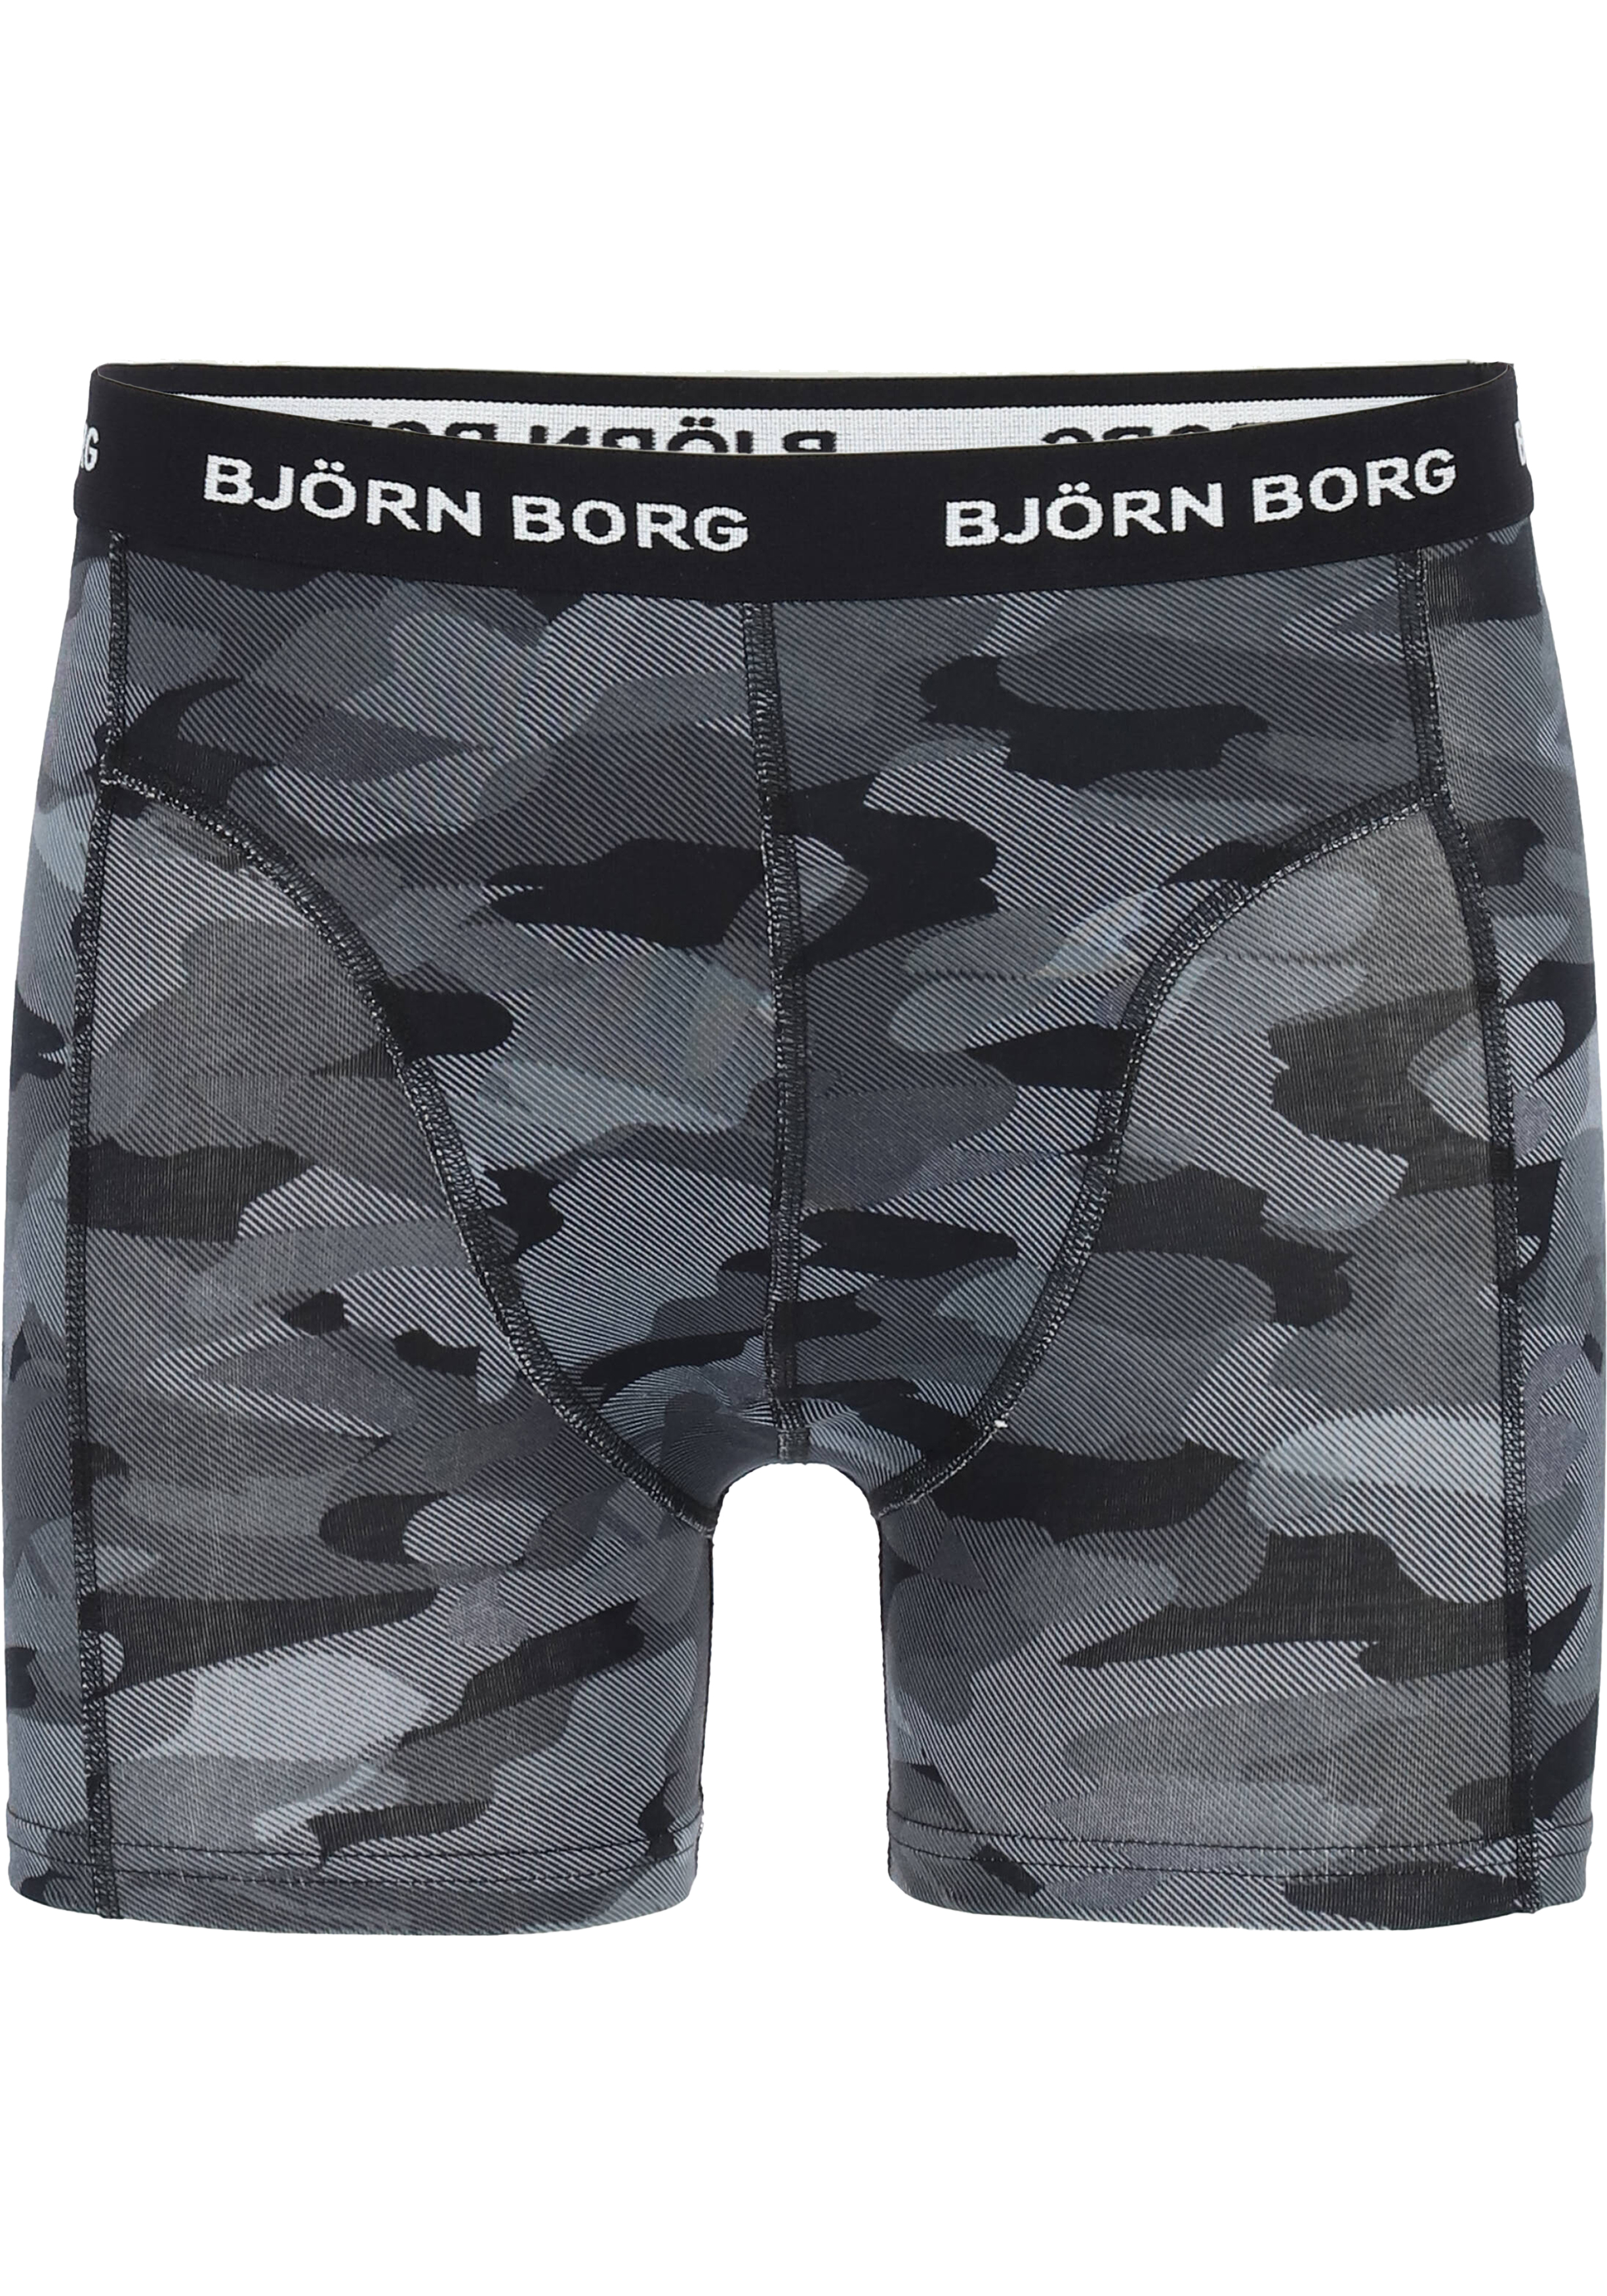 Gronden wees gegroet Feest Bjorn Borg boxershorts Essential (3-pack), heren boxers normale lengte,...  - vakantie DEALS: bestel vele artikelen van topmerken met korting